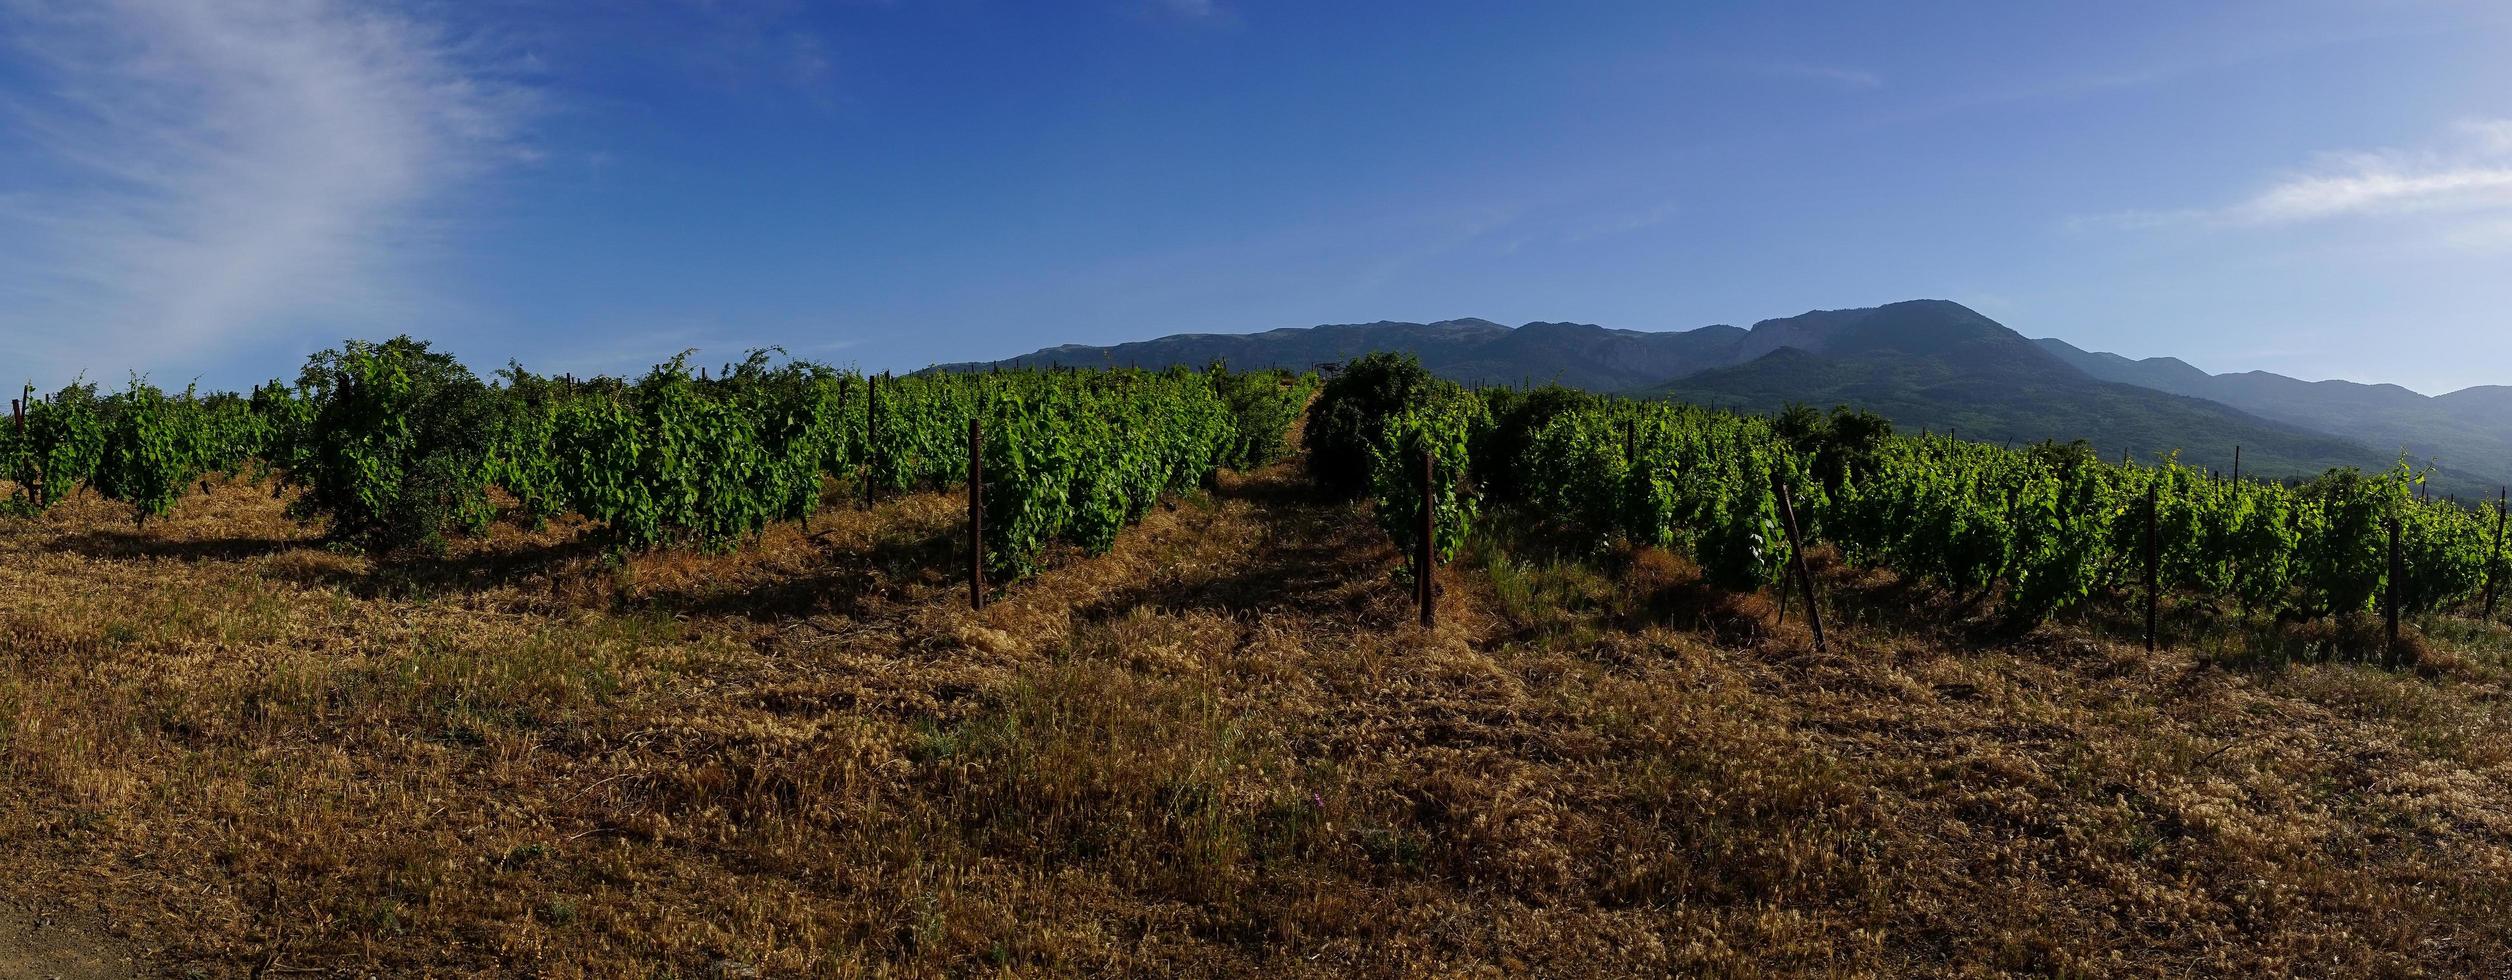 le paysage naturel des vignobles de Crimée. photo